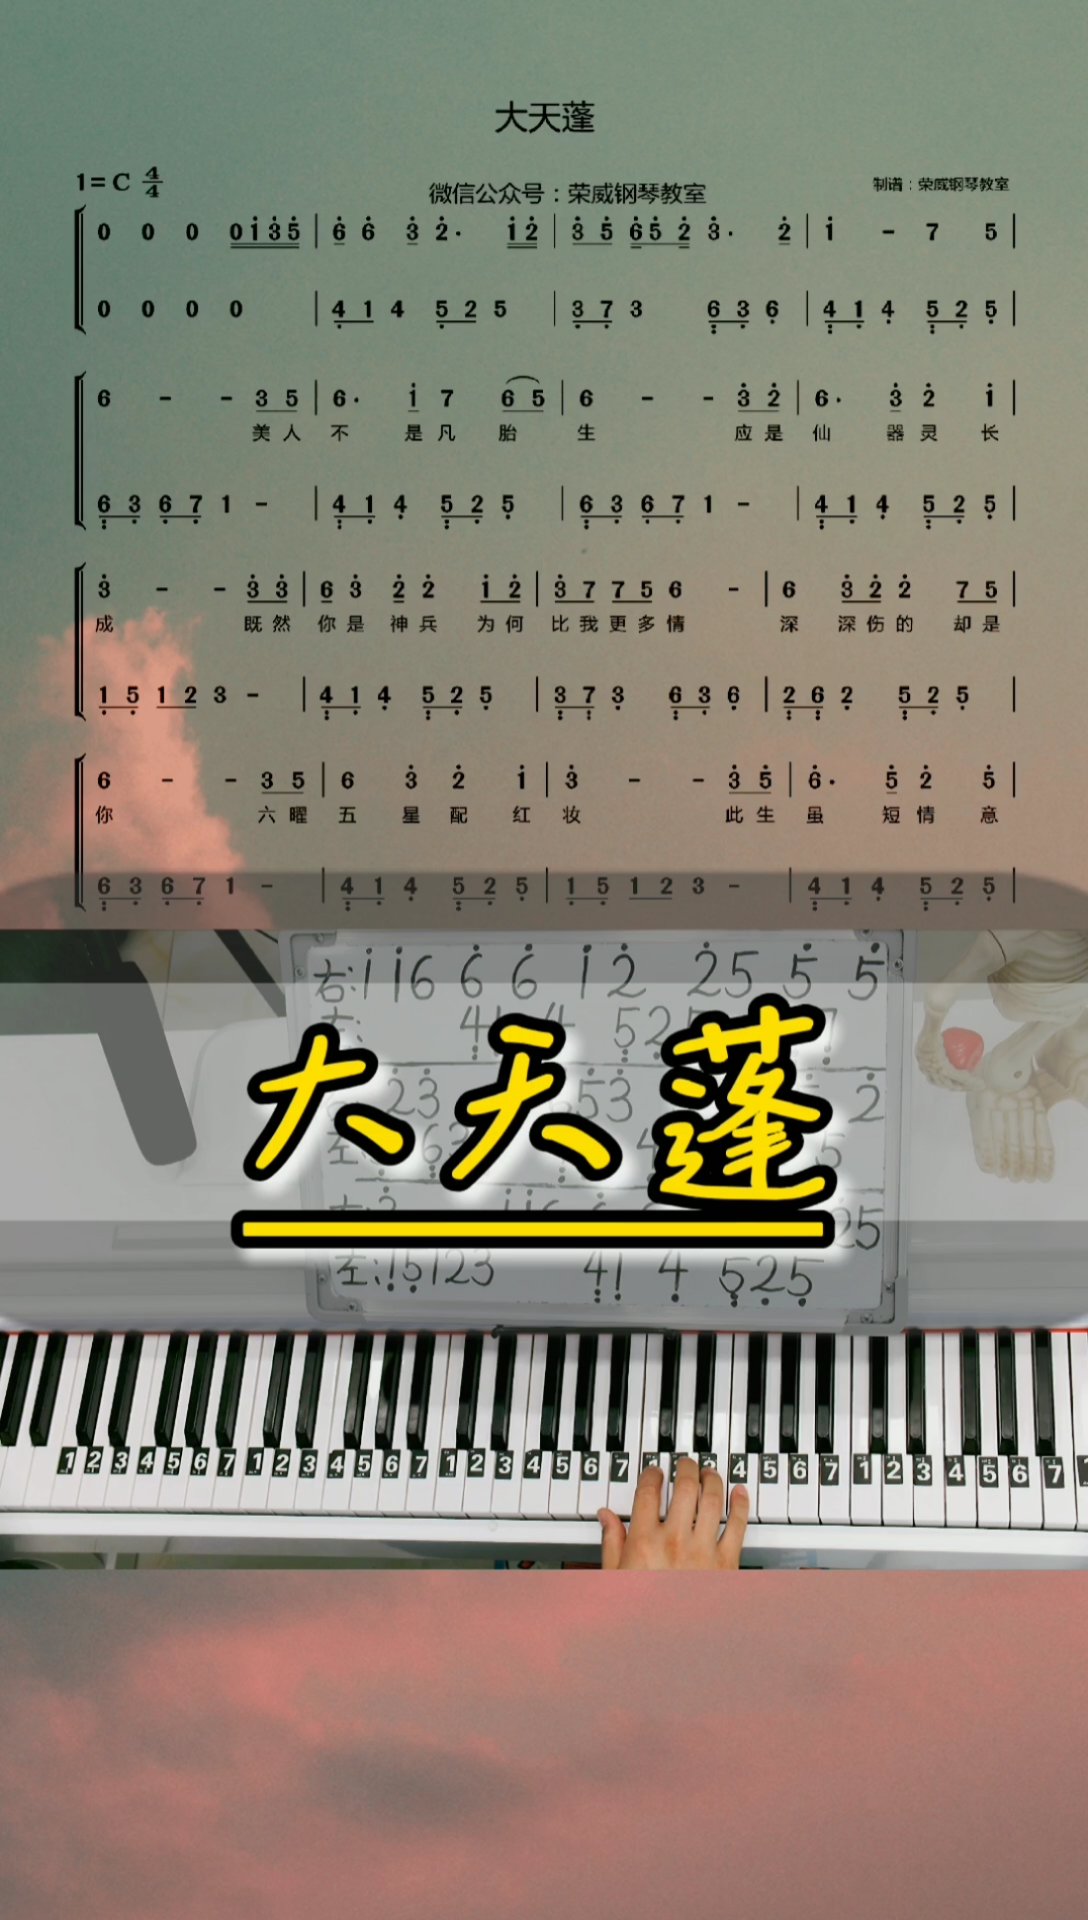 大天蓬钢琴谱简谱图片